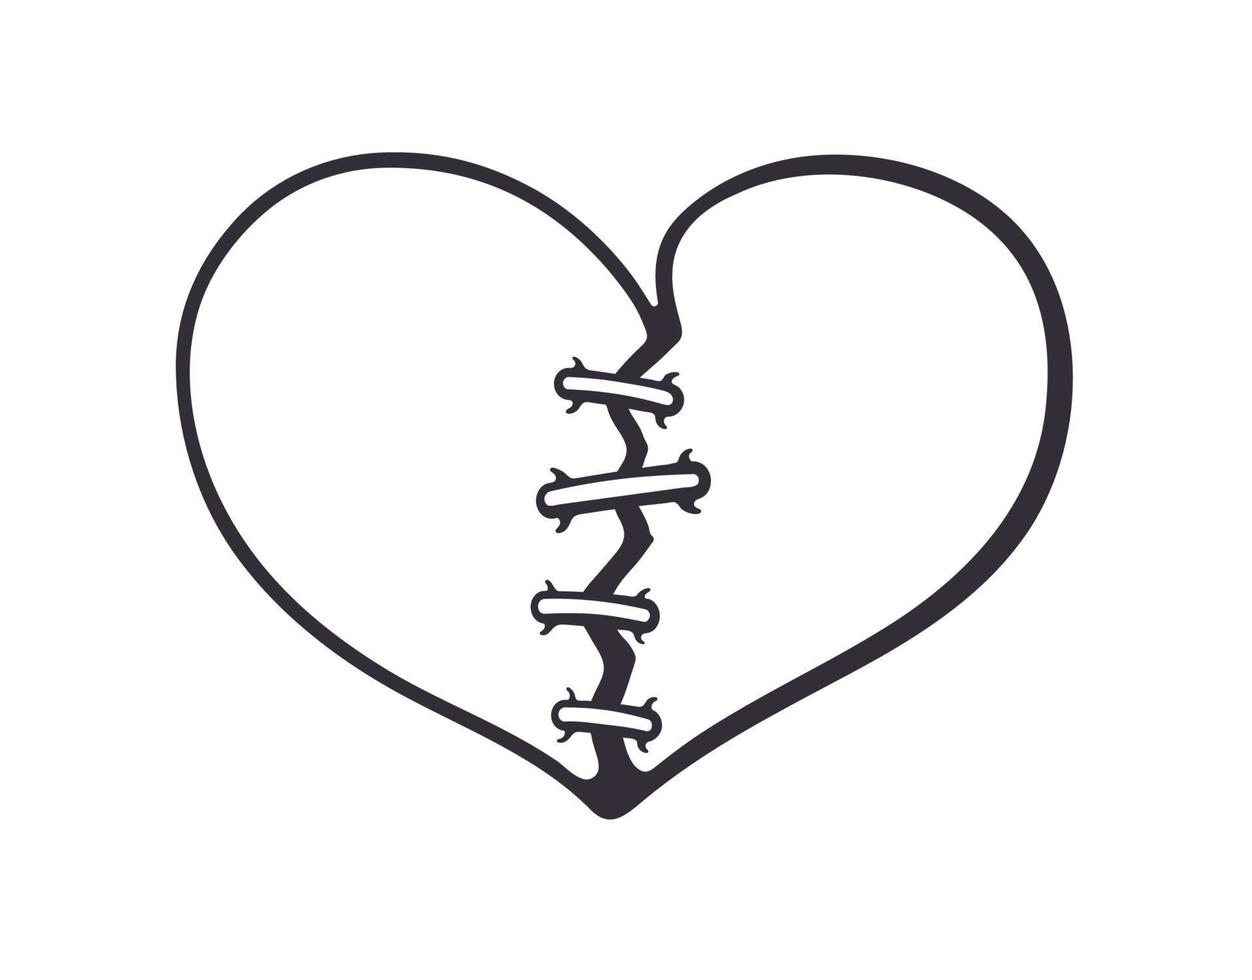 Outline doodle of broken heart vector